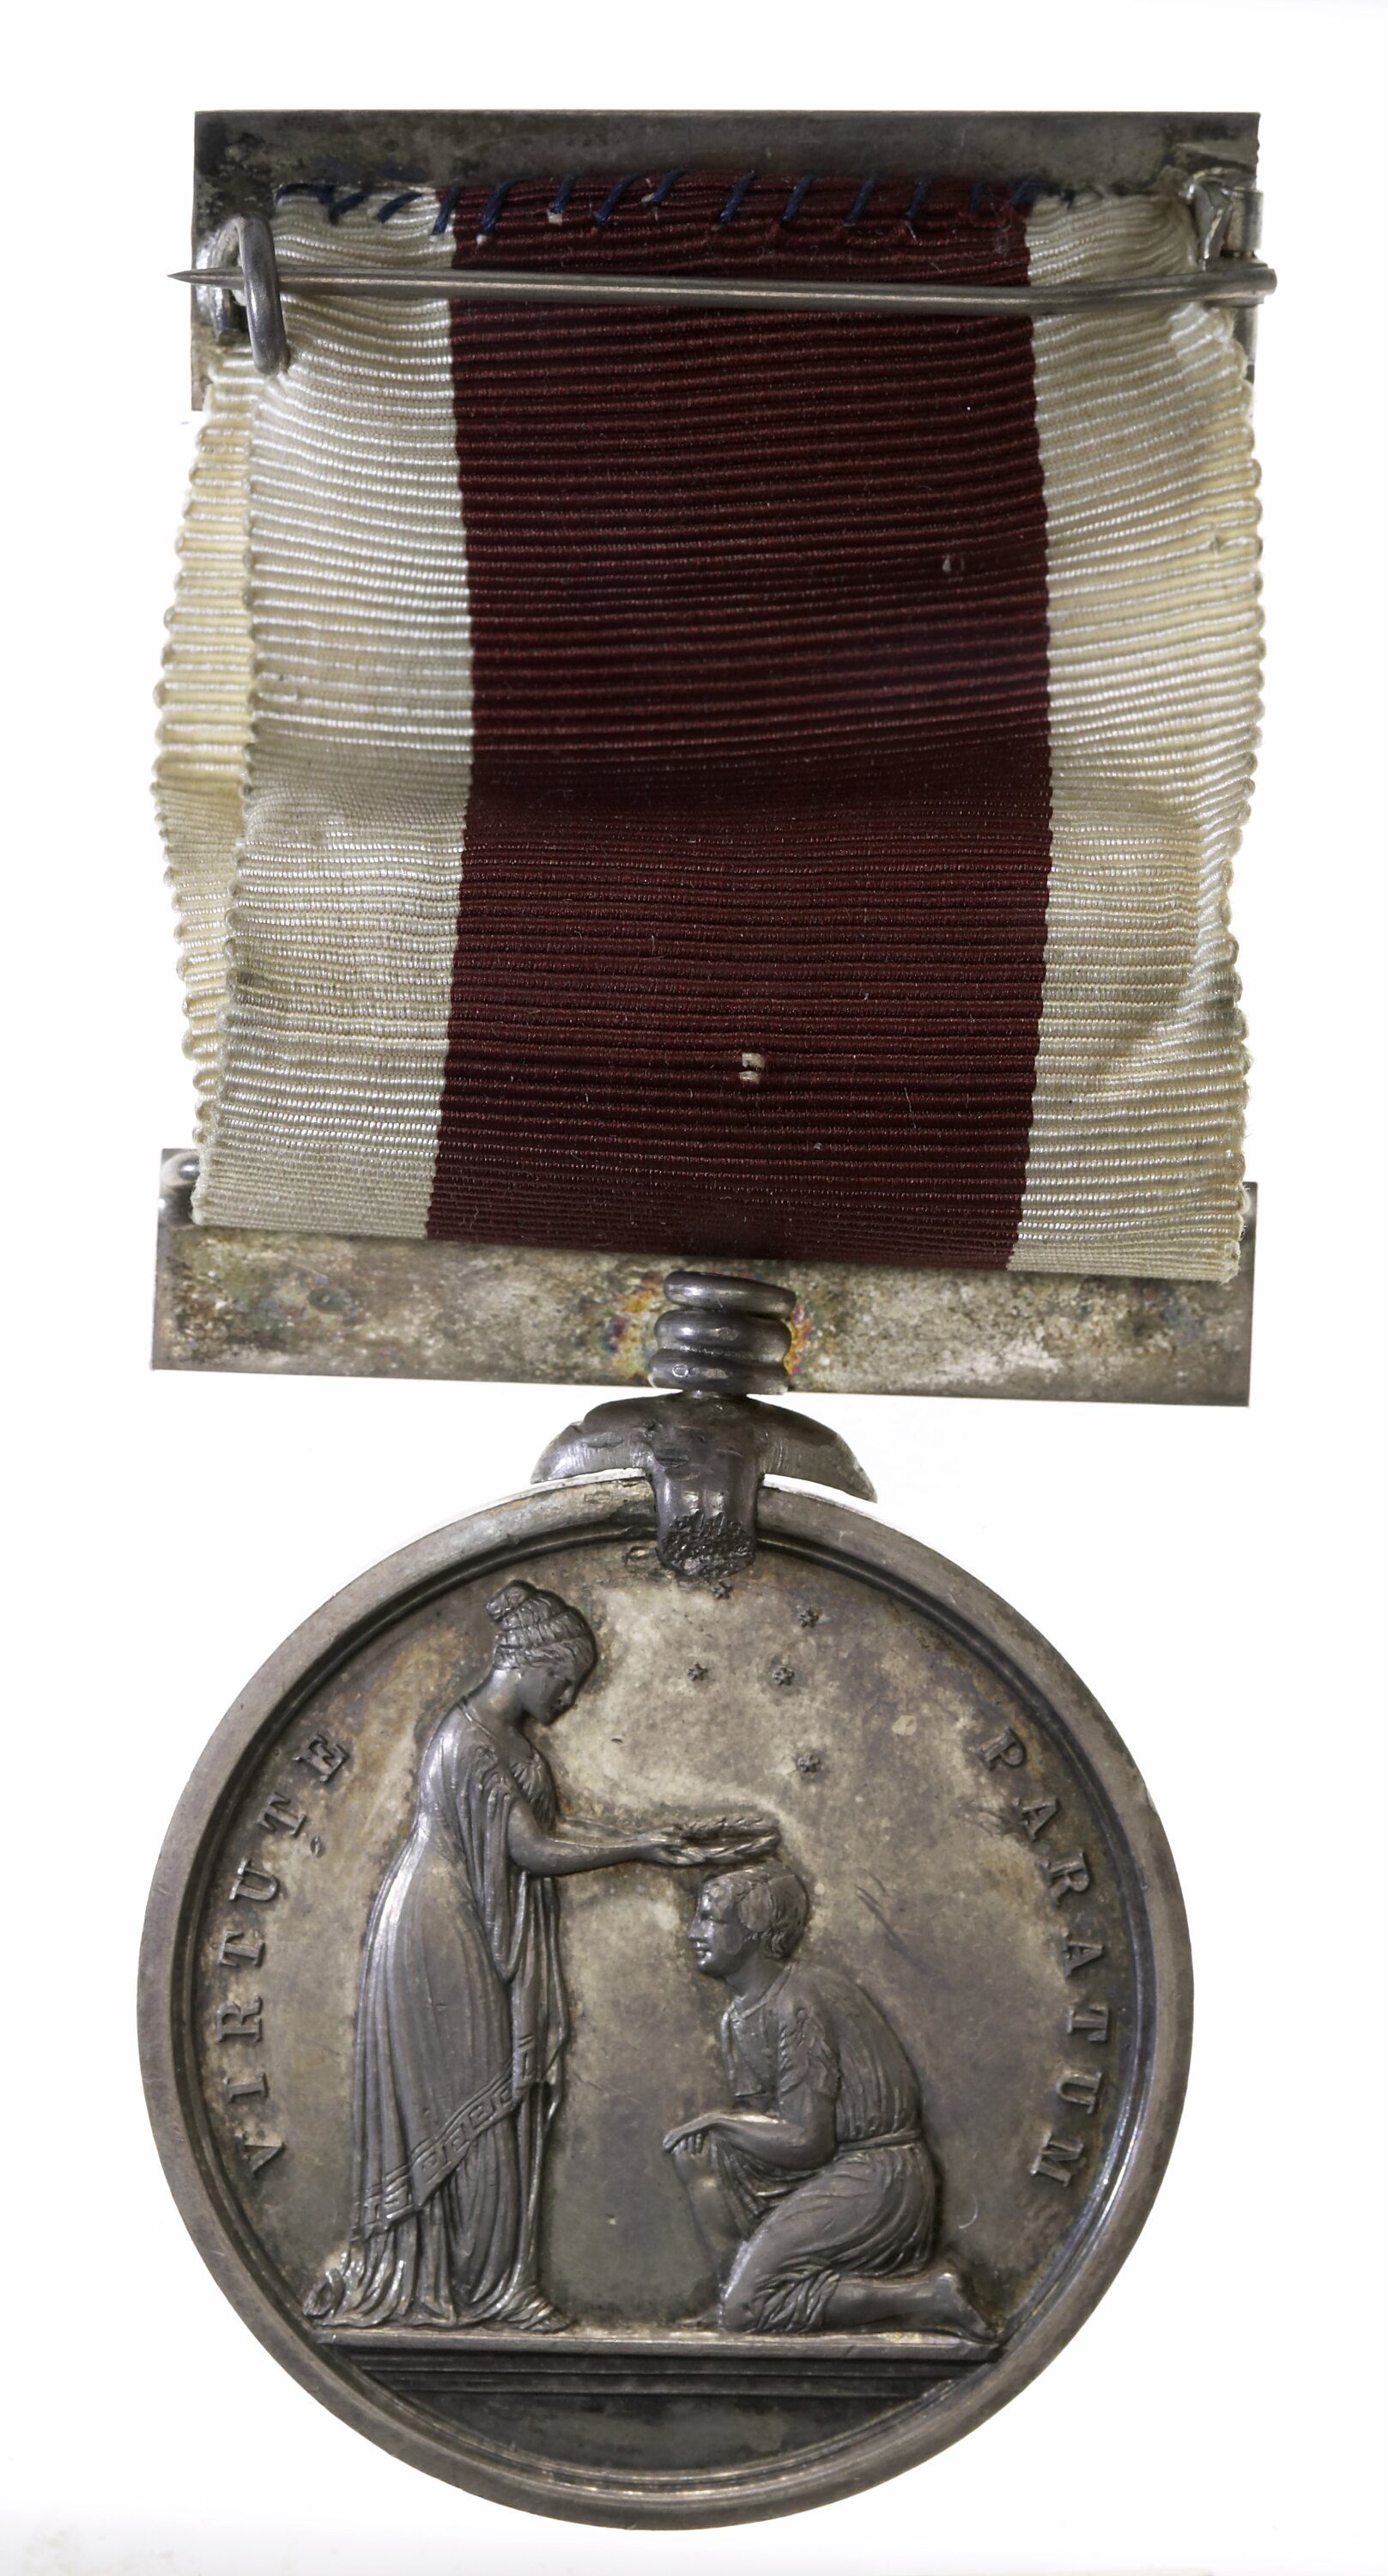 The Royal Life Saving Society bronze medallion, awarded to Frank